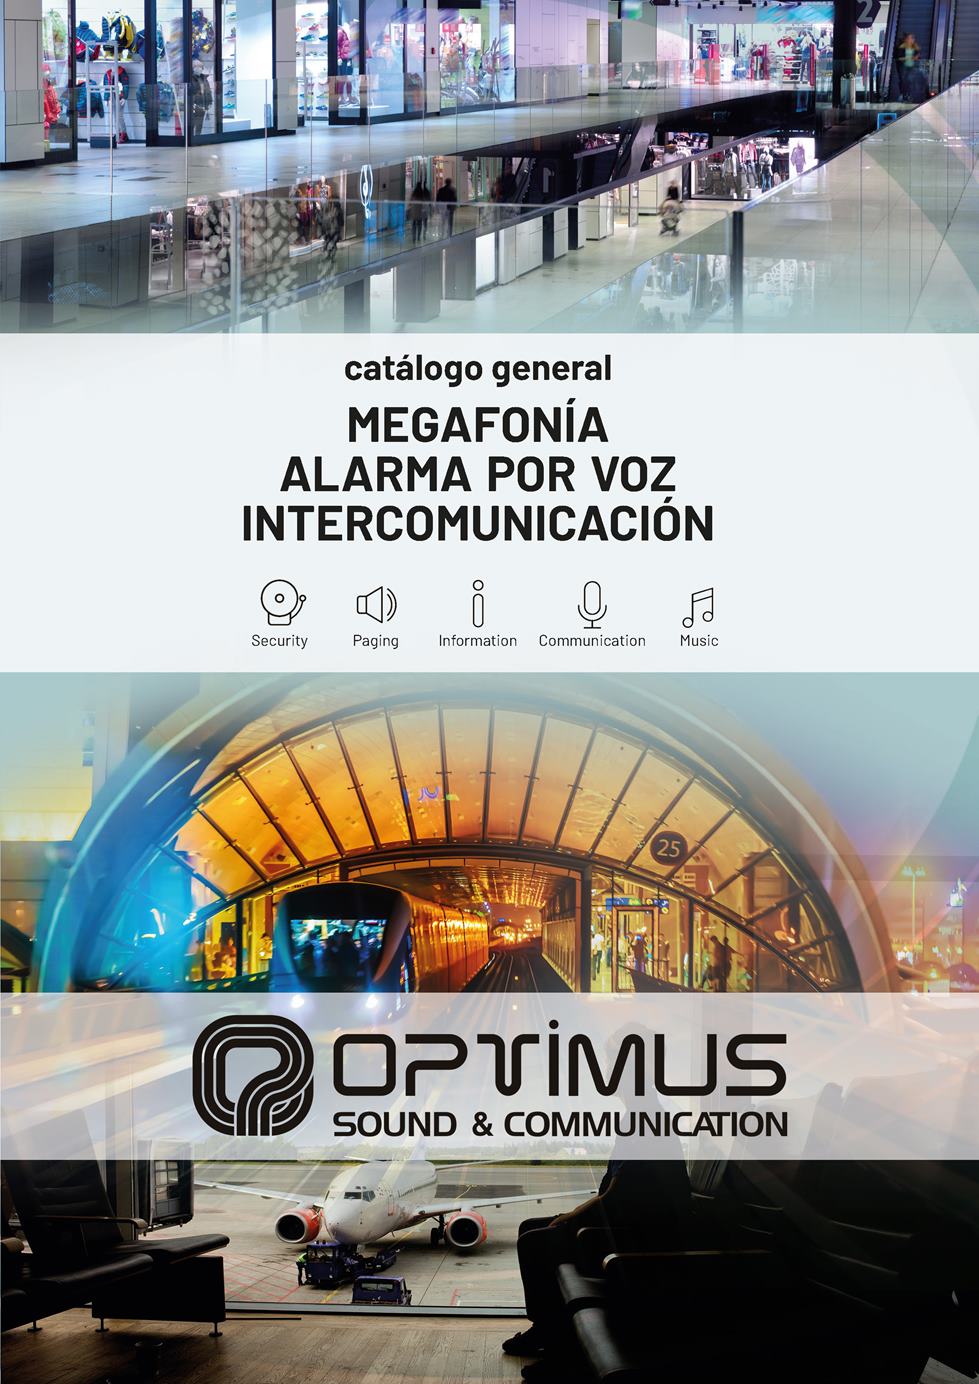 catálogo de OPTIMUS de megafonía, alarma por voz e intercomunicación